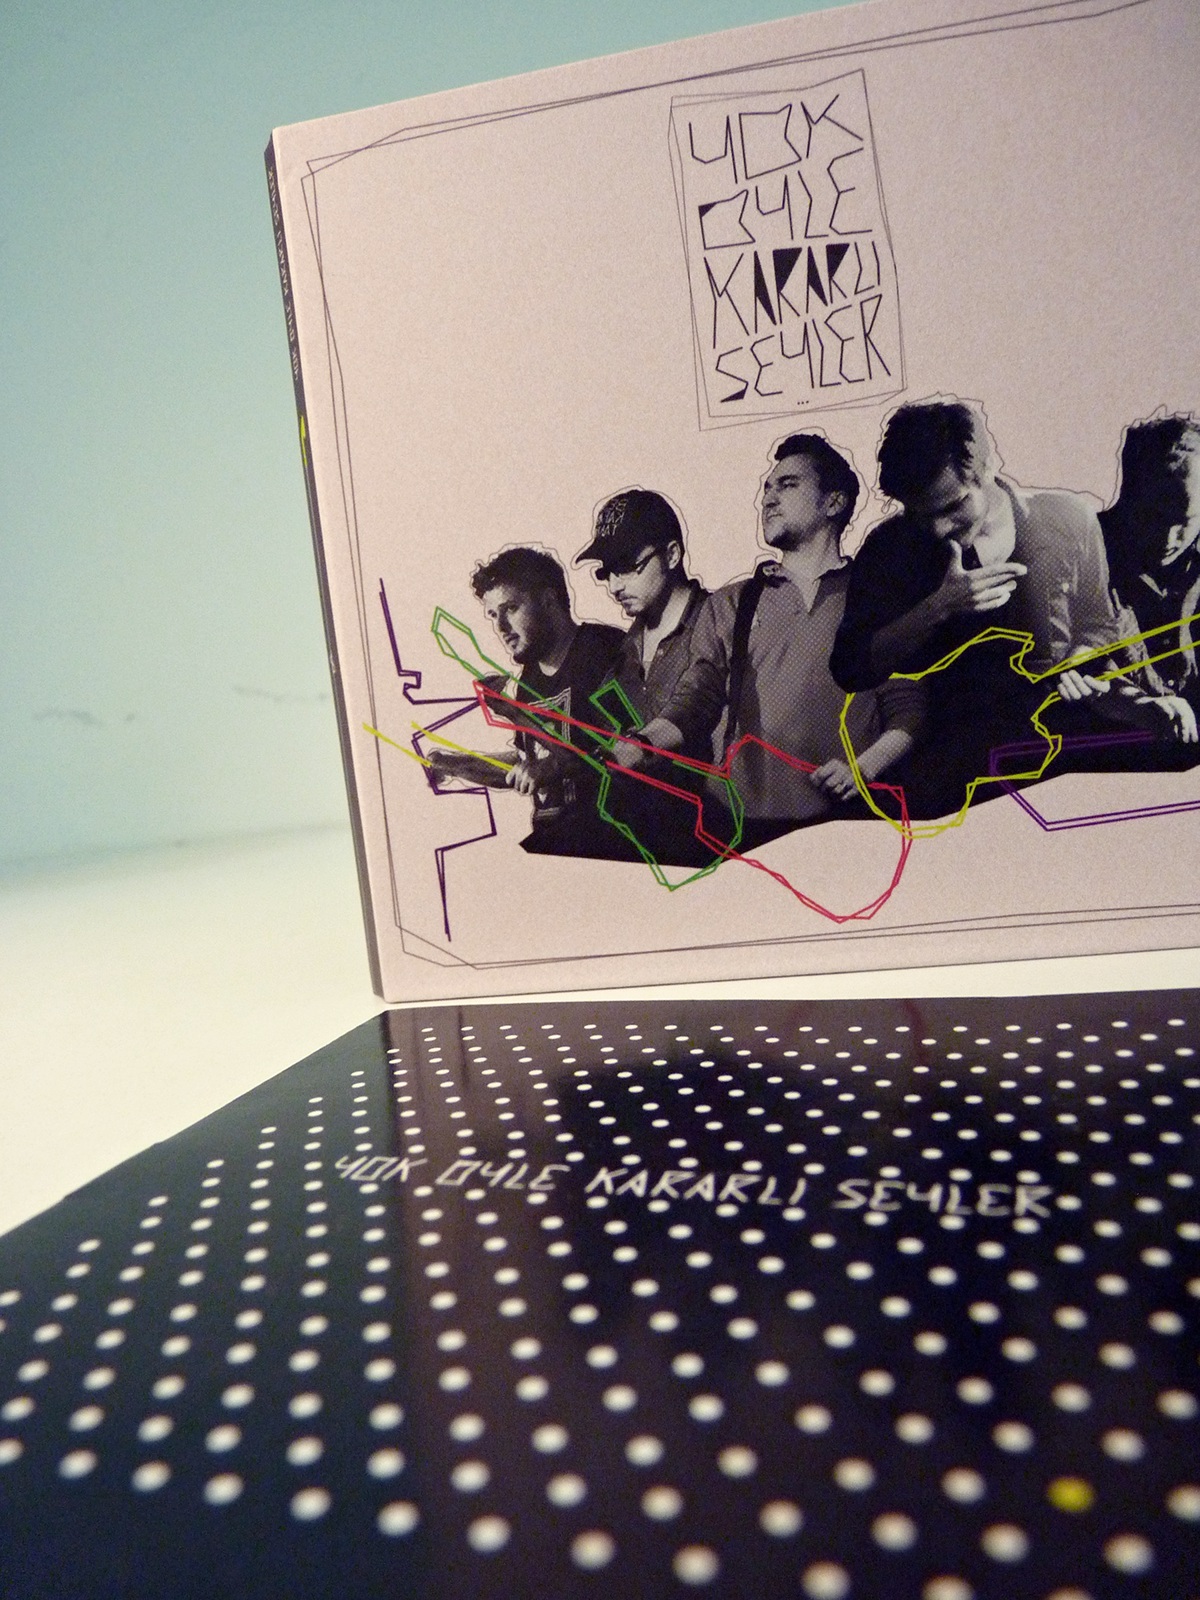 yok öyle kararlı seyler yoks music band cd Album graphic istanbul indie alternative Booklet 2014new album